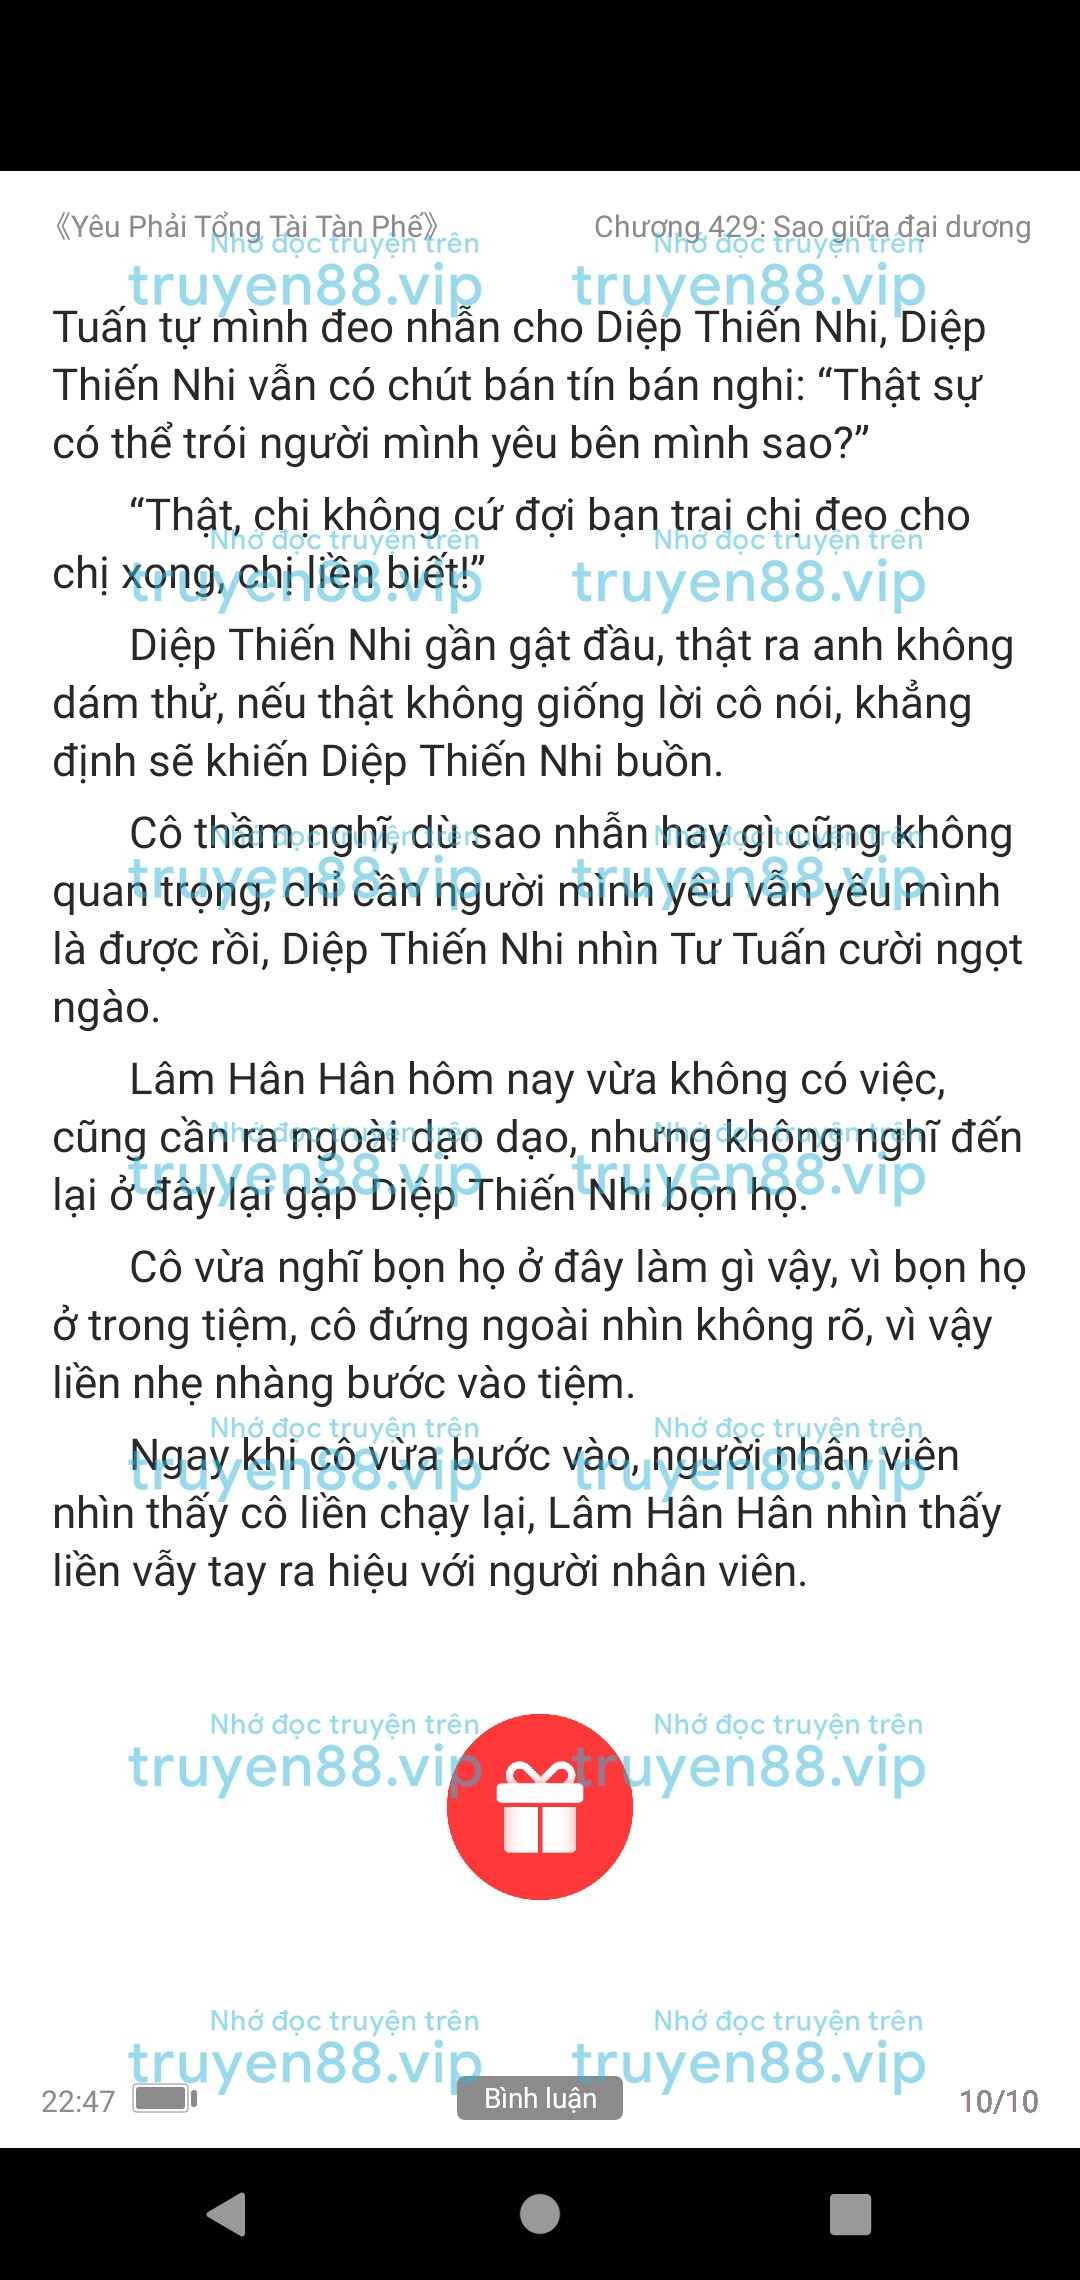 yeu-phai-tong-tai-tan-phe-422-0